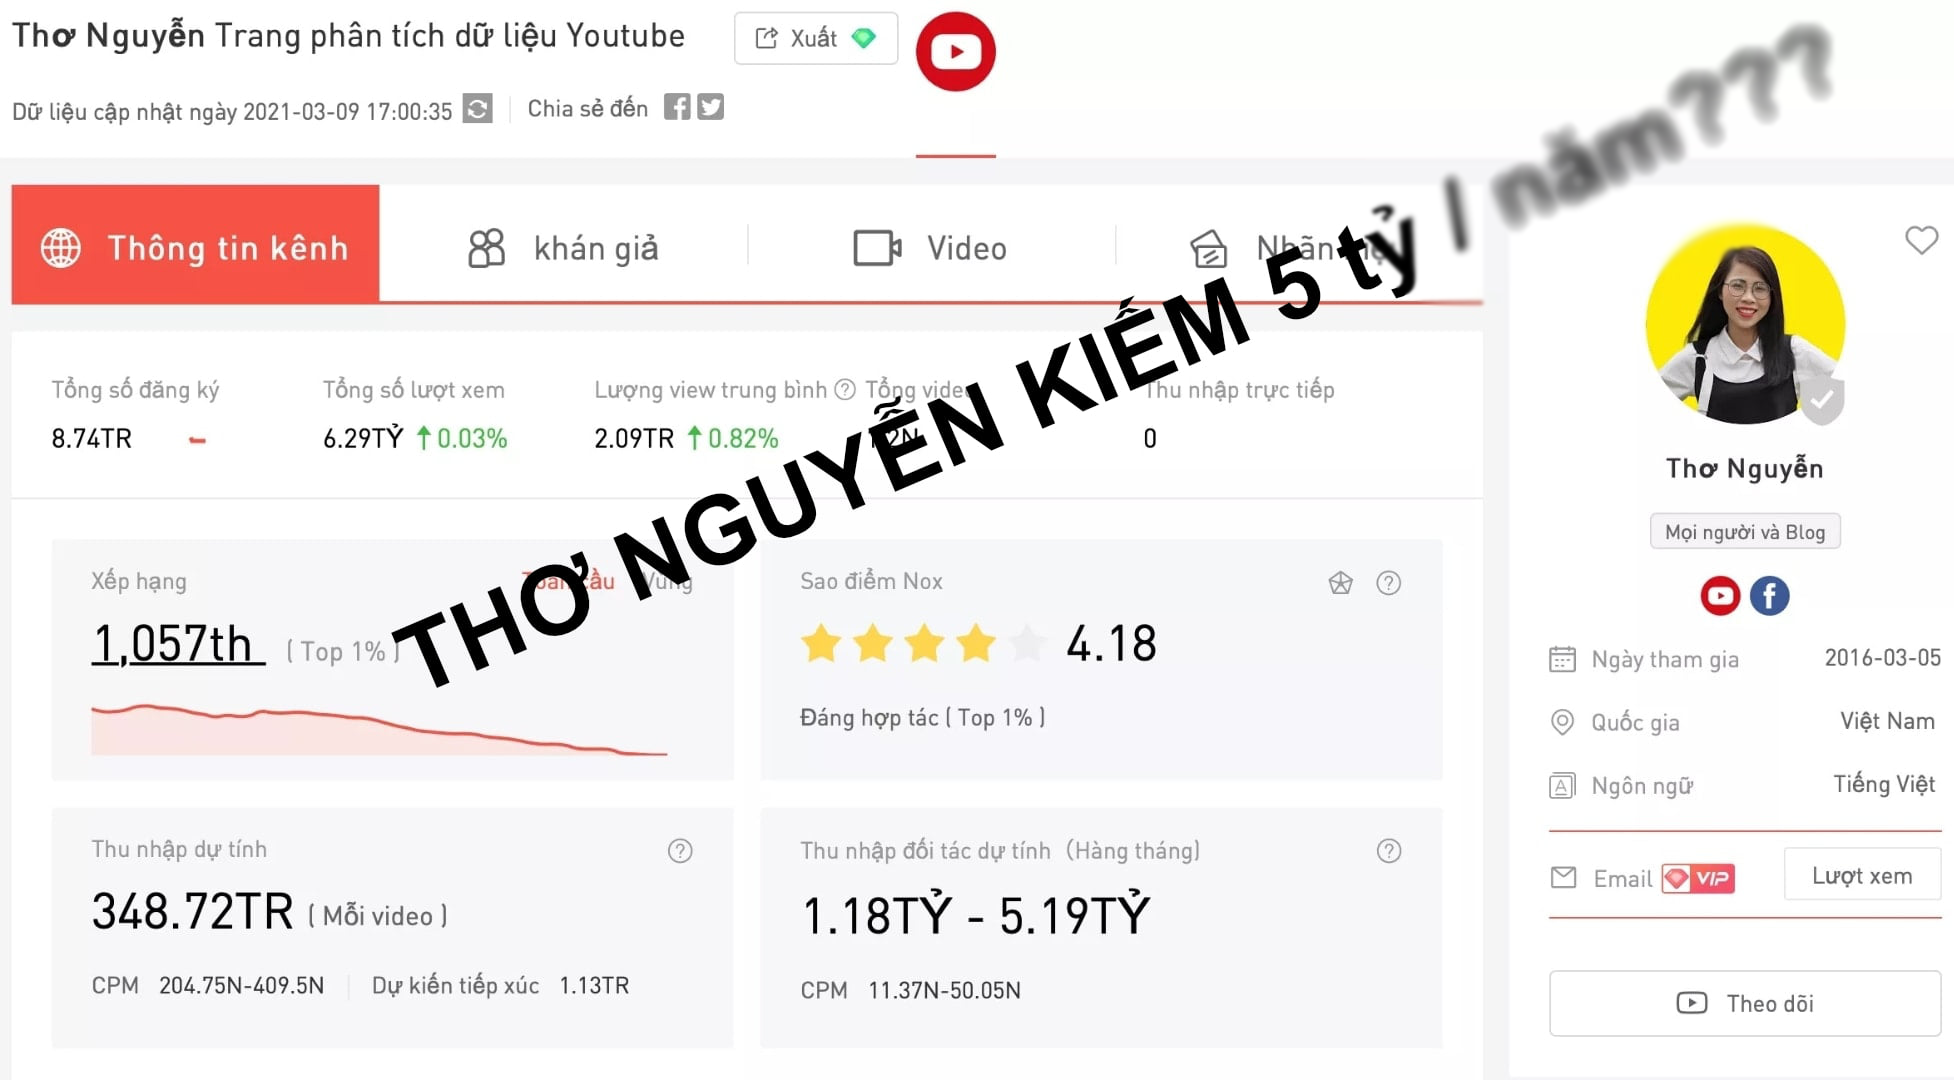 Rộ tin Thơ Nguyễn kiếm 5 tỷ/tháng từ Youtube dù bị dân mạng tẩy chay dữ dội